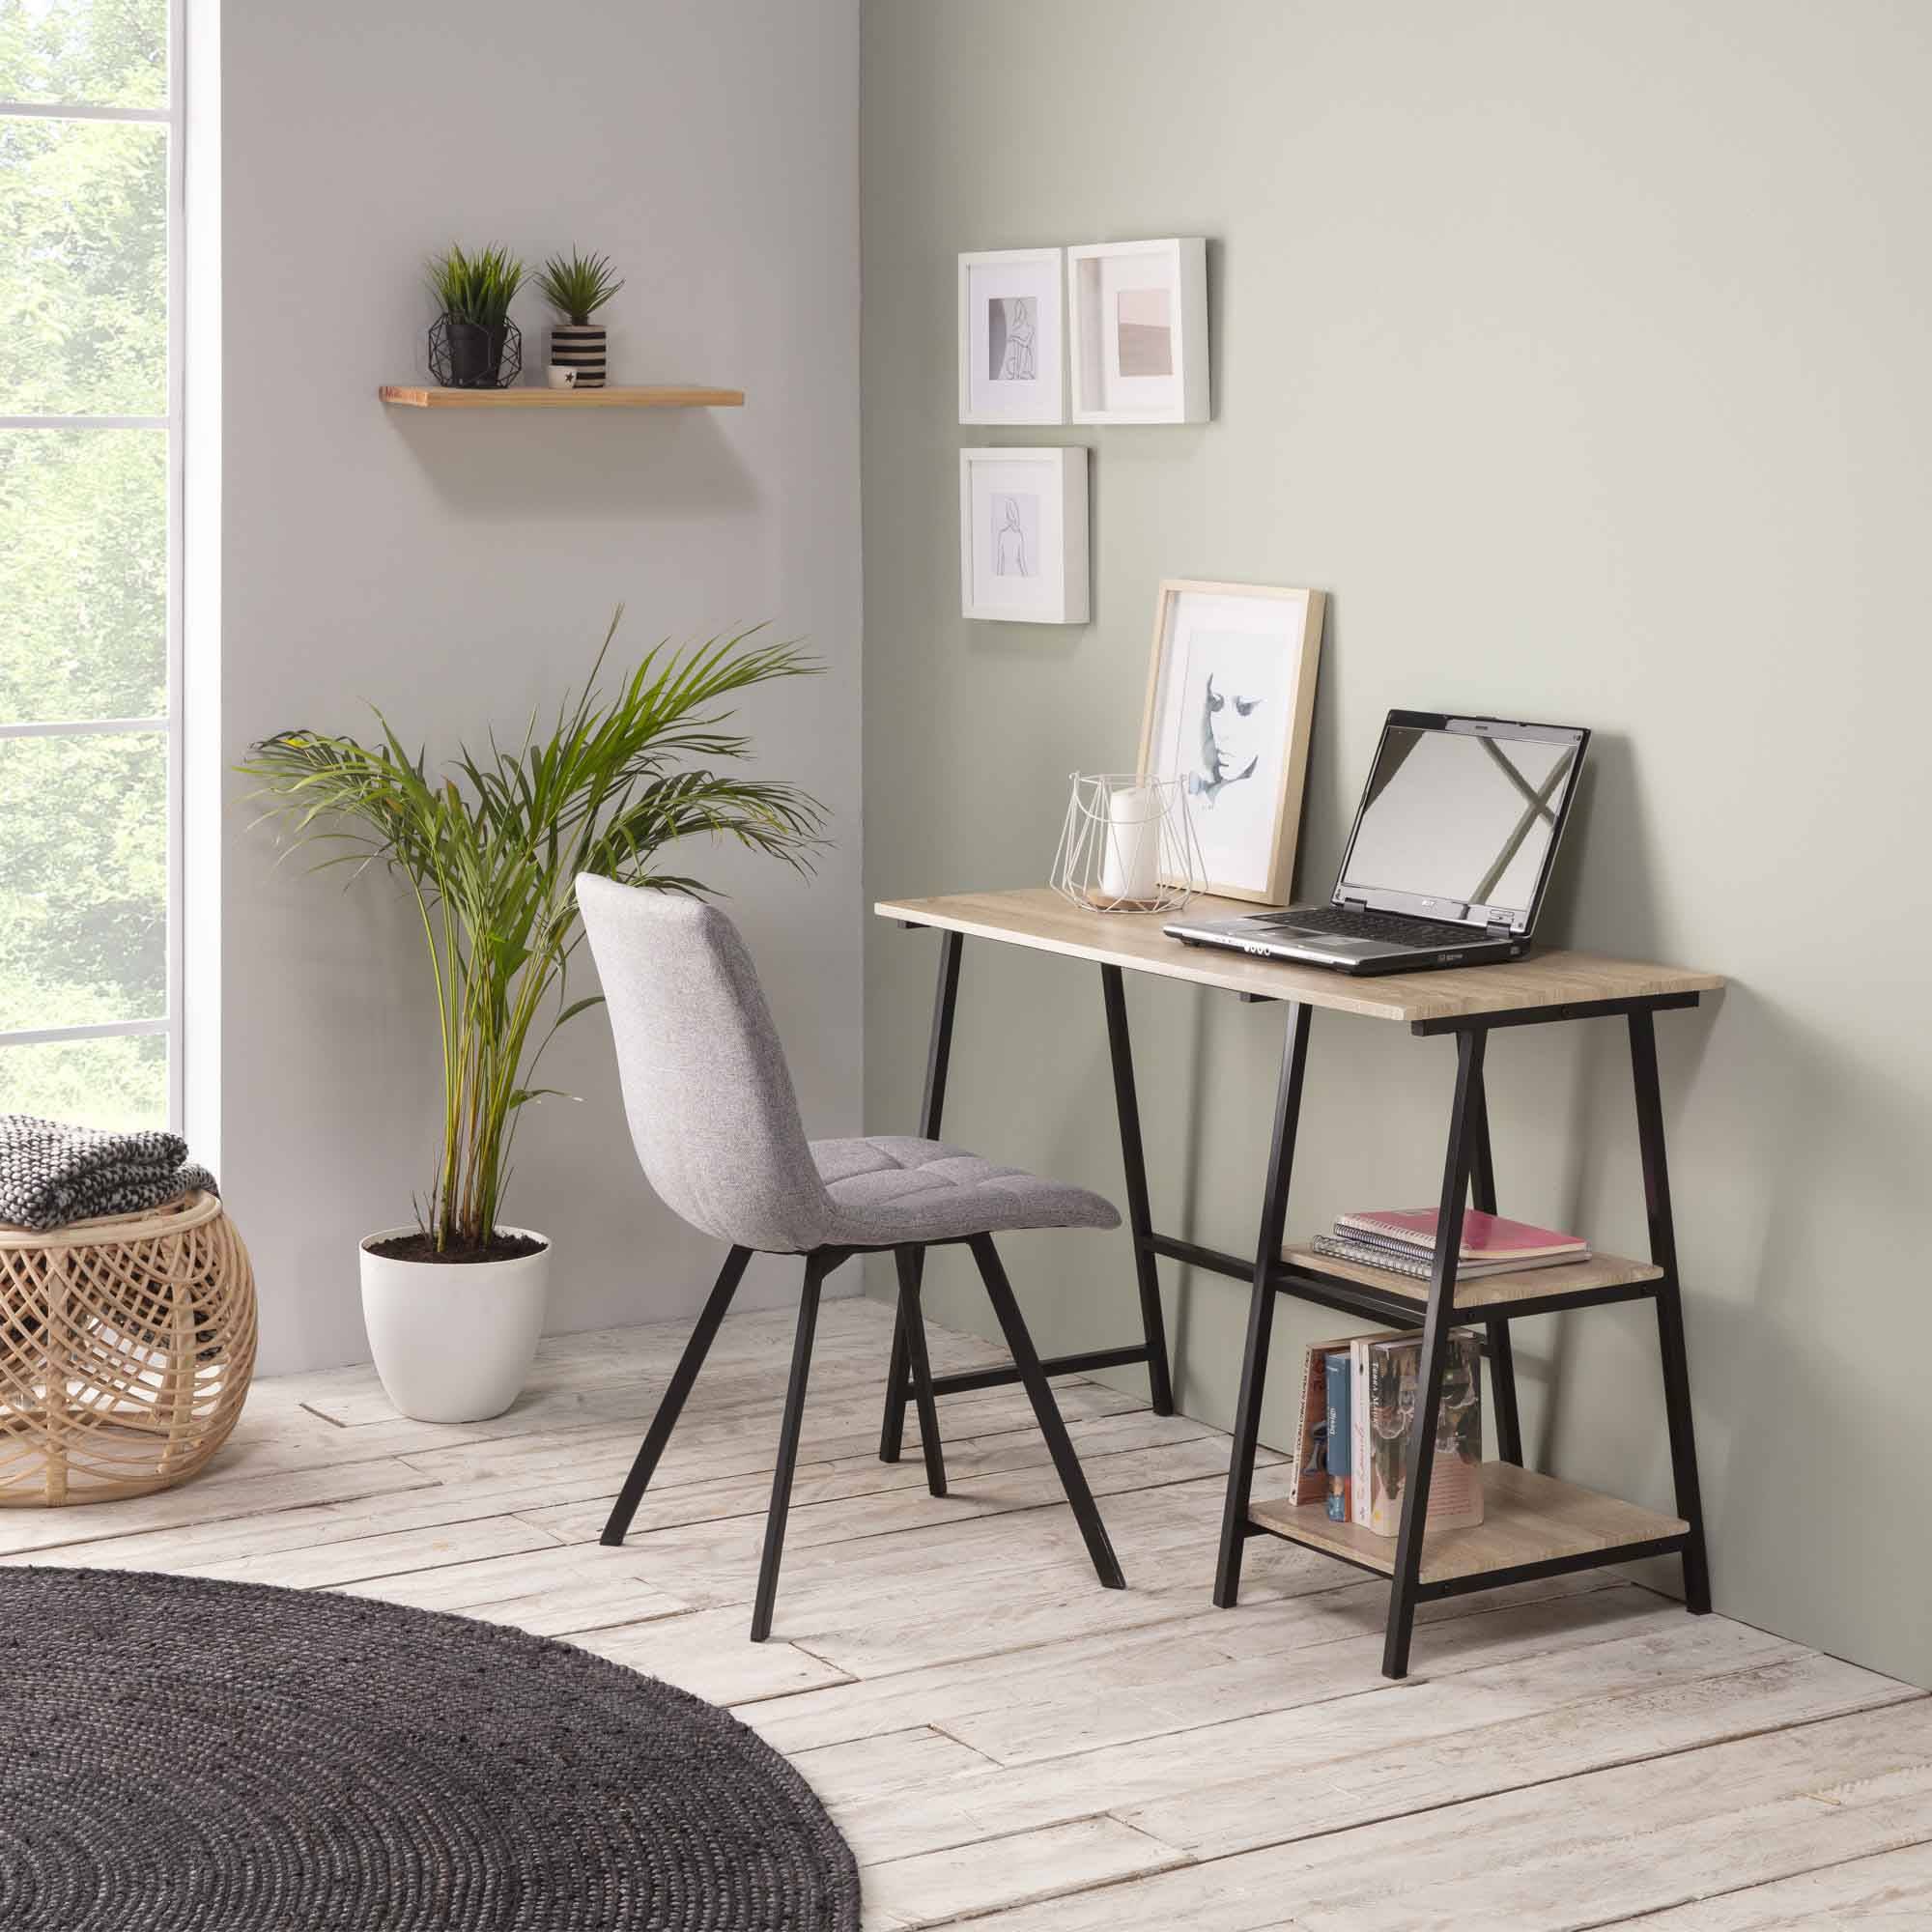 Muebles Modernos de diseño, Mesa escritorio lacado blanco estructura acero  negro